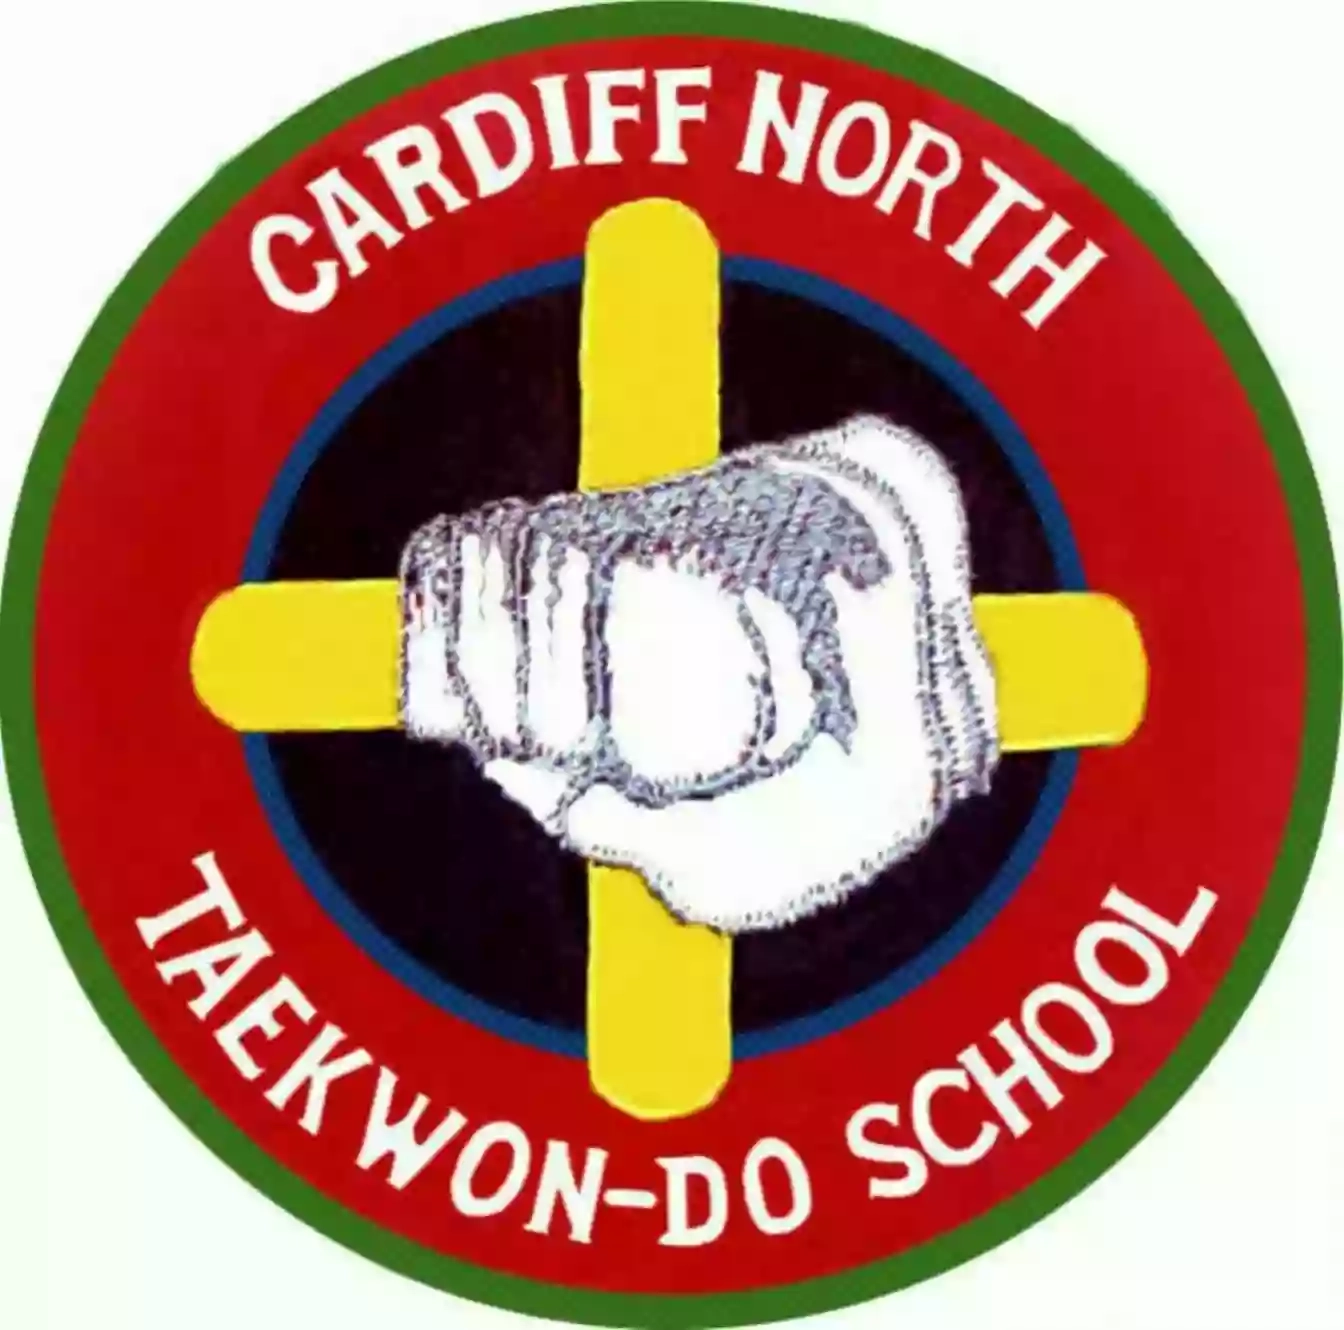 Cardiff North Taekwondo School